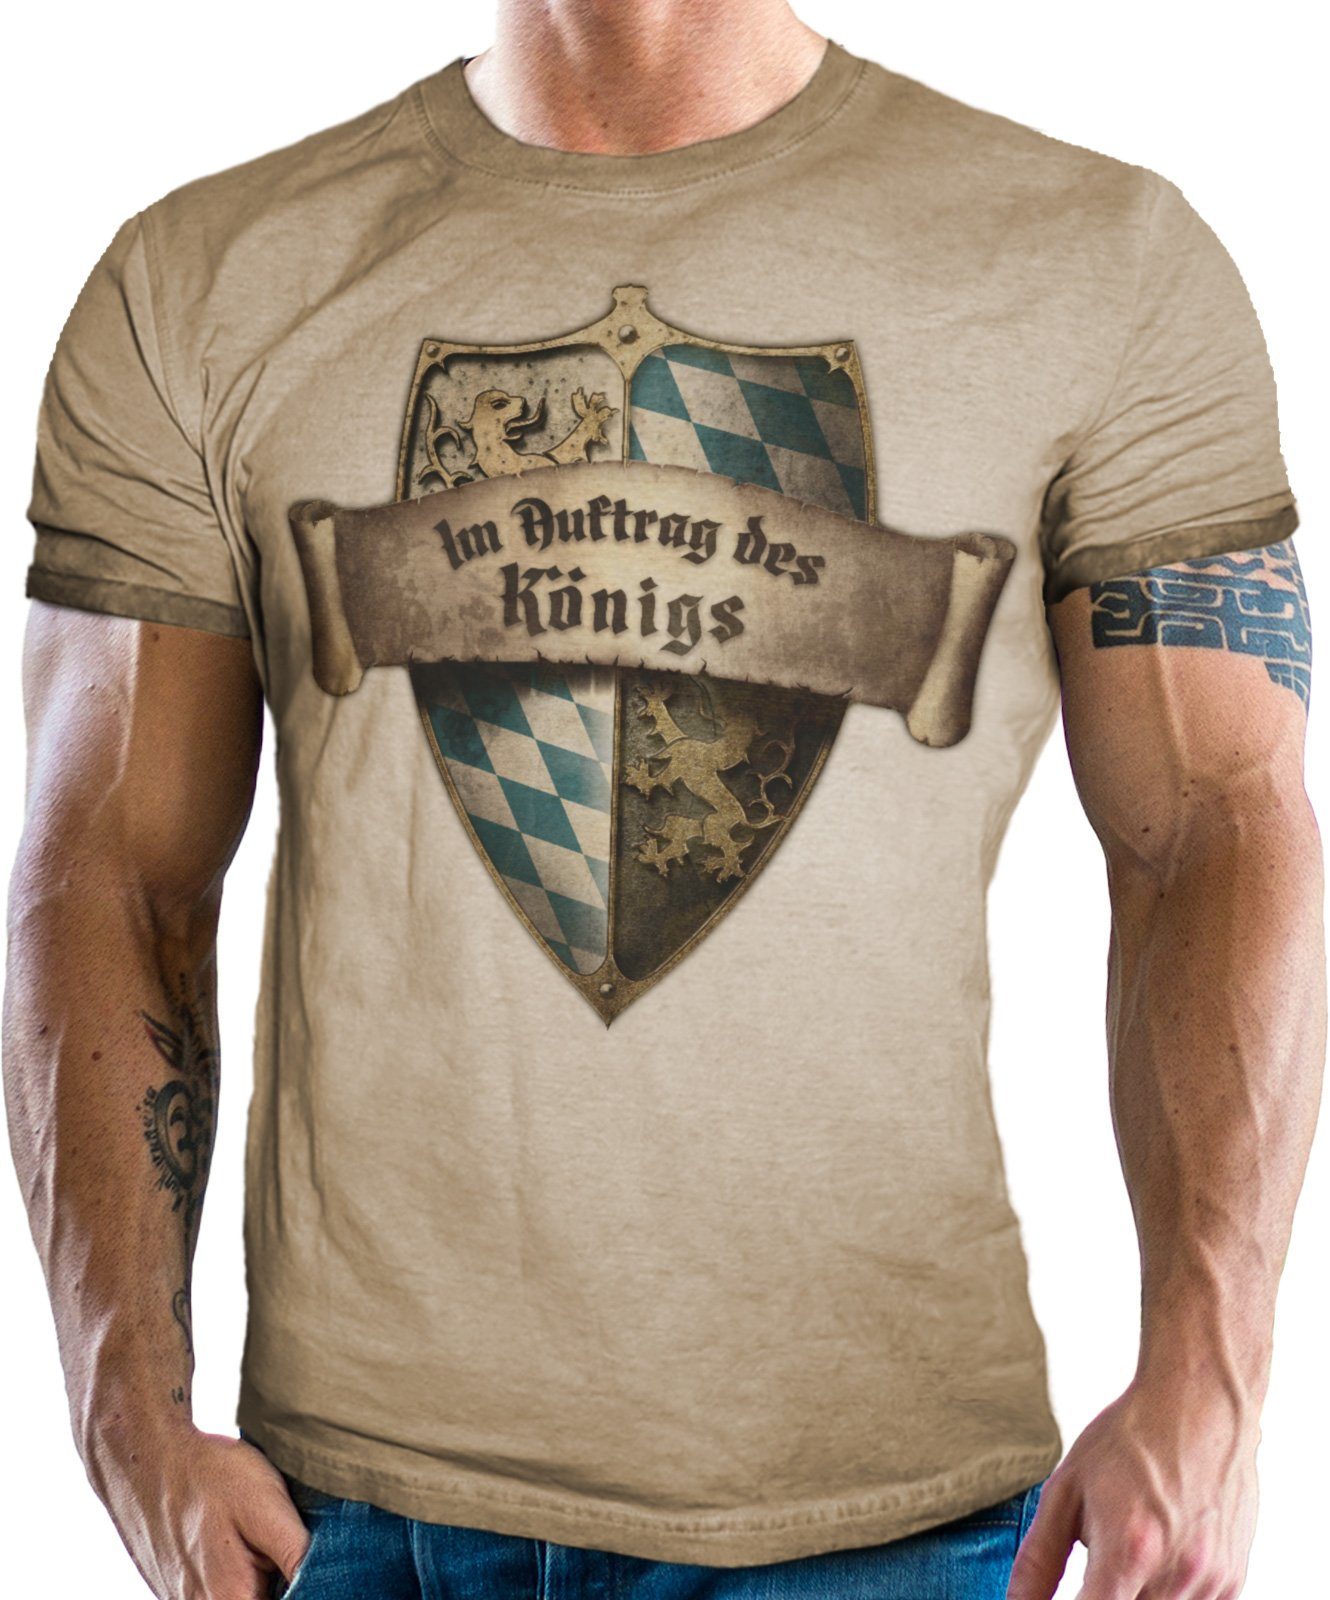 LOBO NEGRO® Trachtenshirt Für Bayern Fans Look: Königs Auftrag Trachten im Im des Vintage 